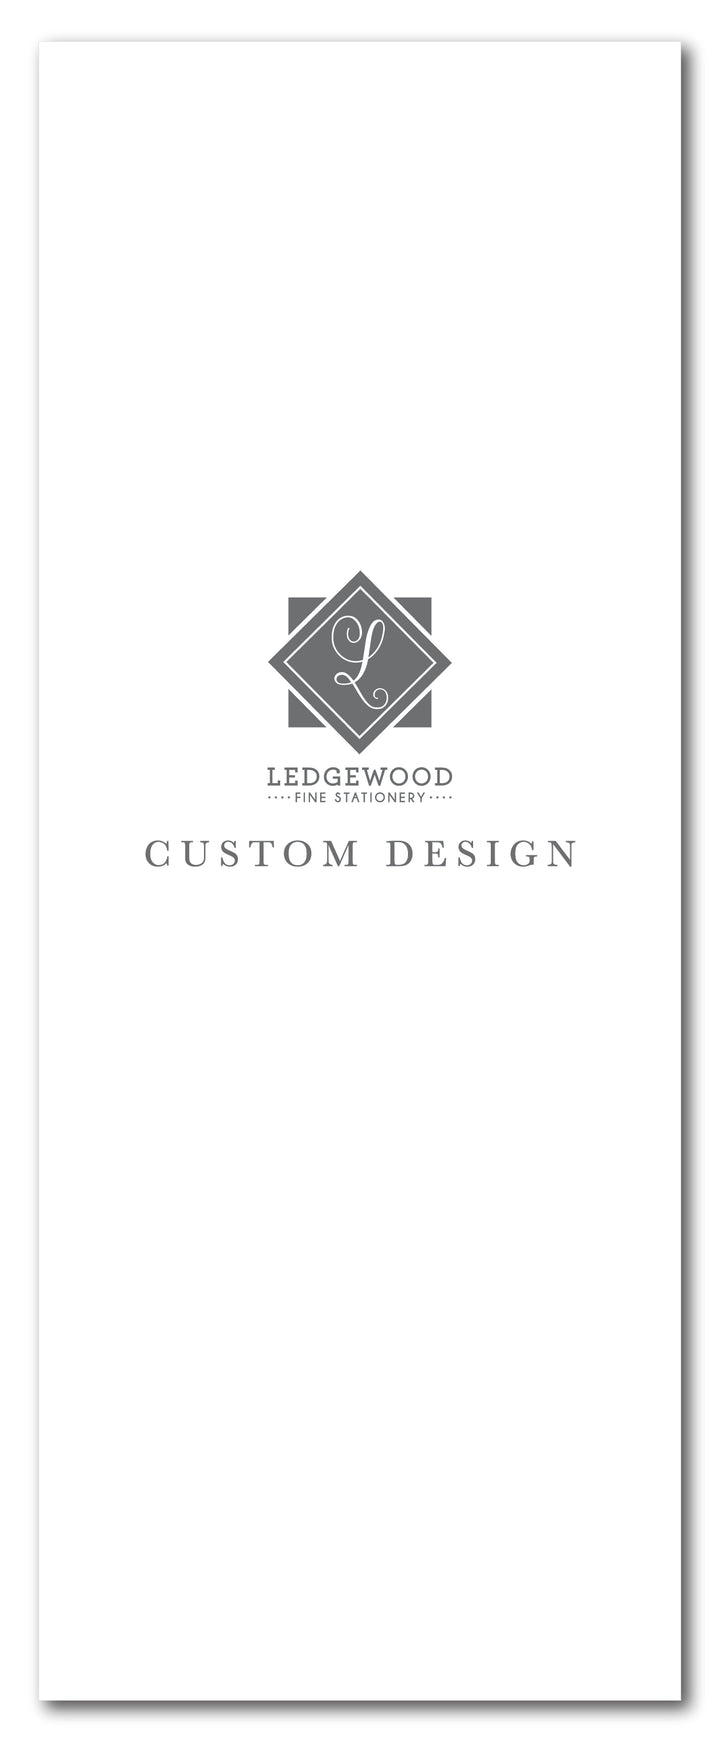 Custom Design Double-Sided Program